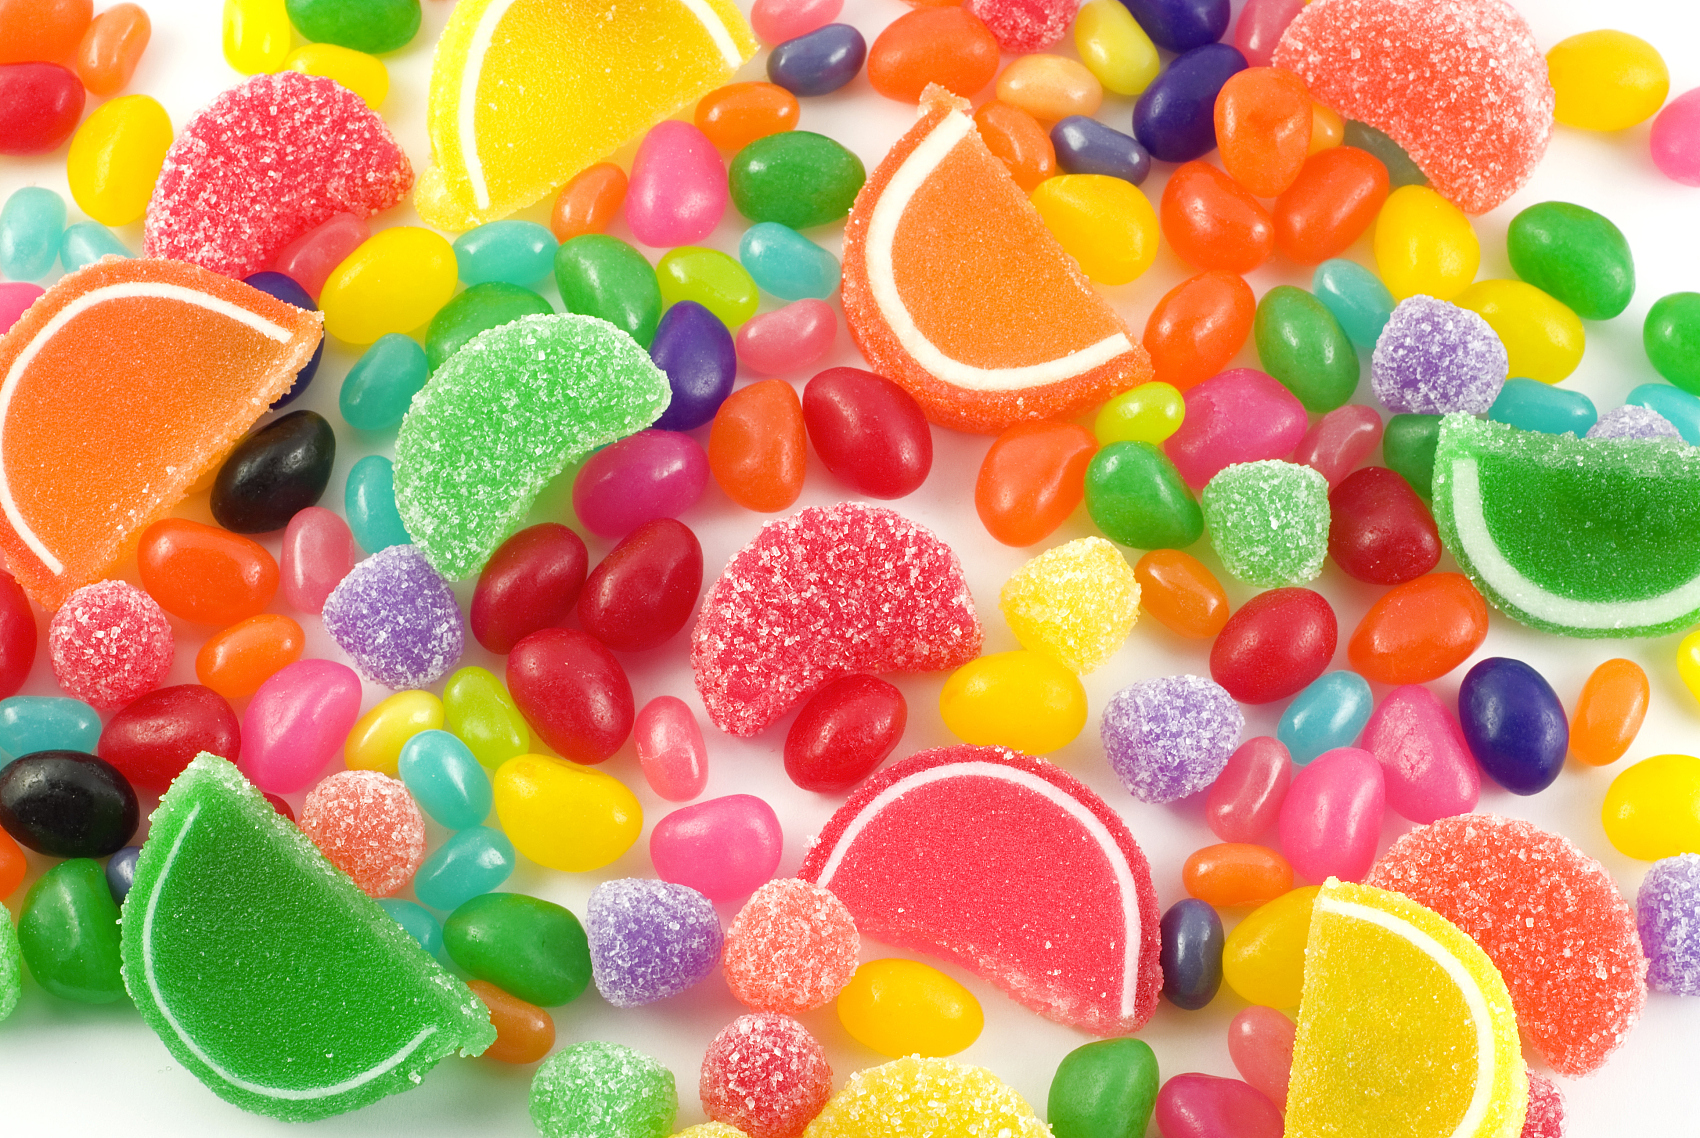 Xarope de glicose usado em doces